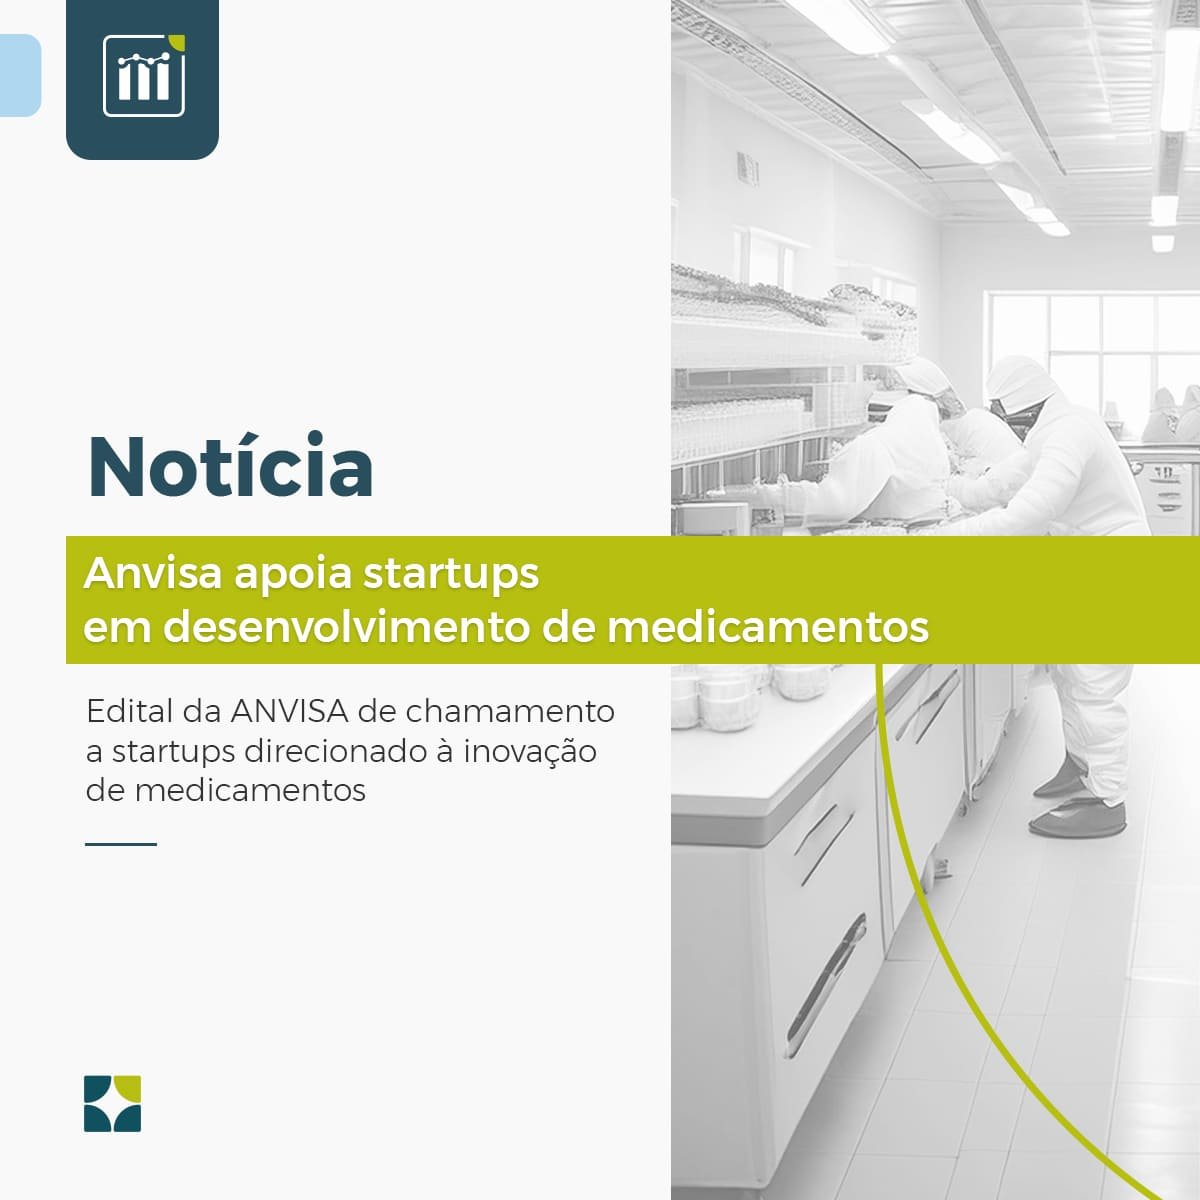 Anvisa apoia startups em desenvolvimento de medicamentos